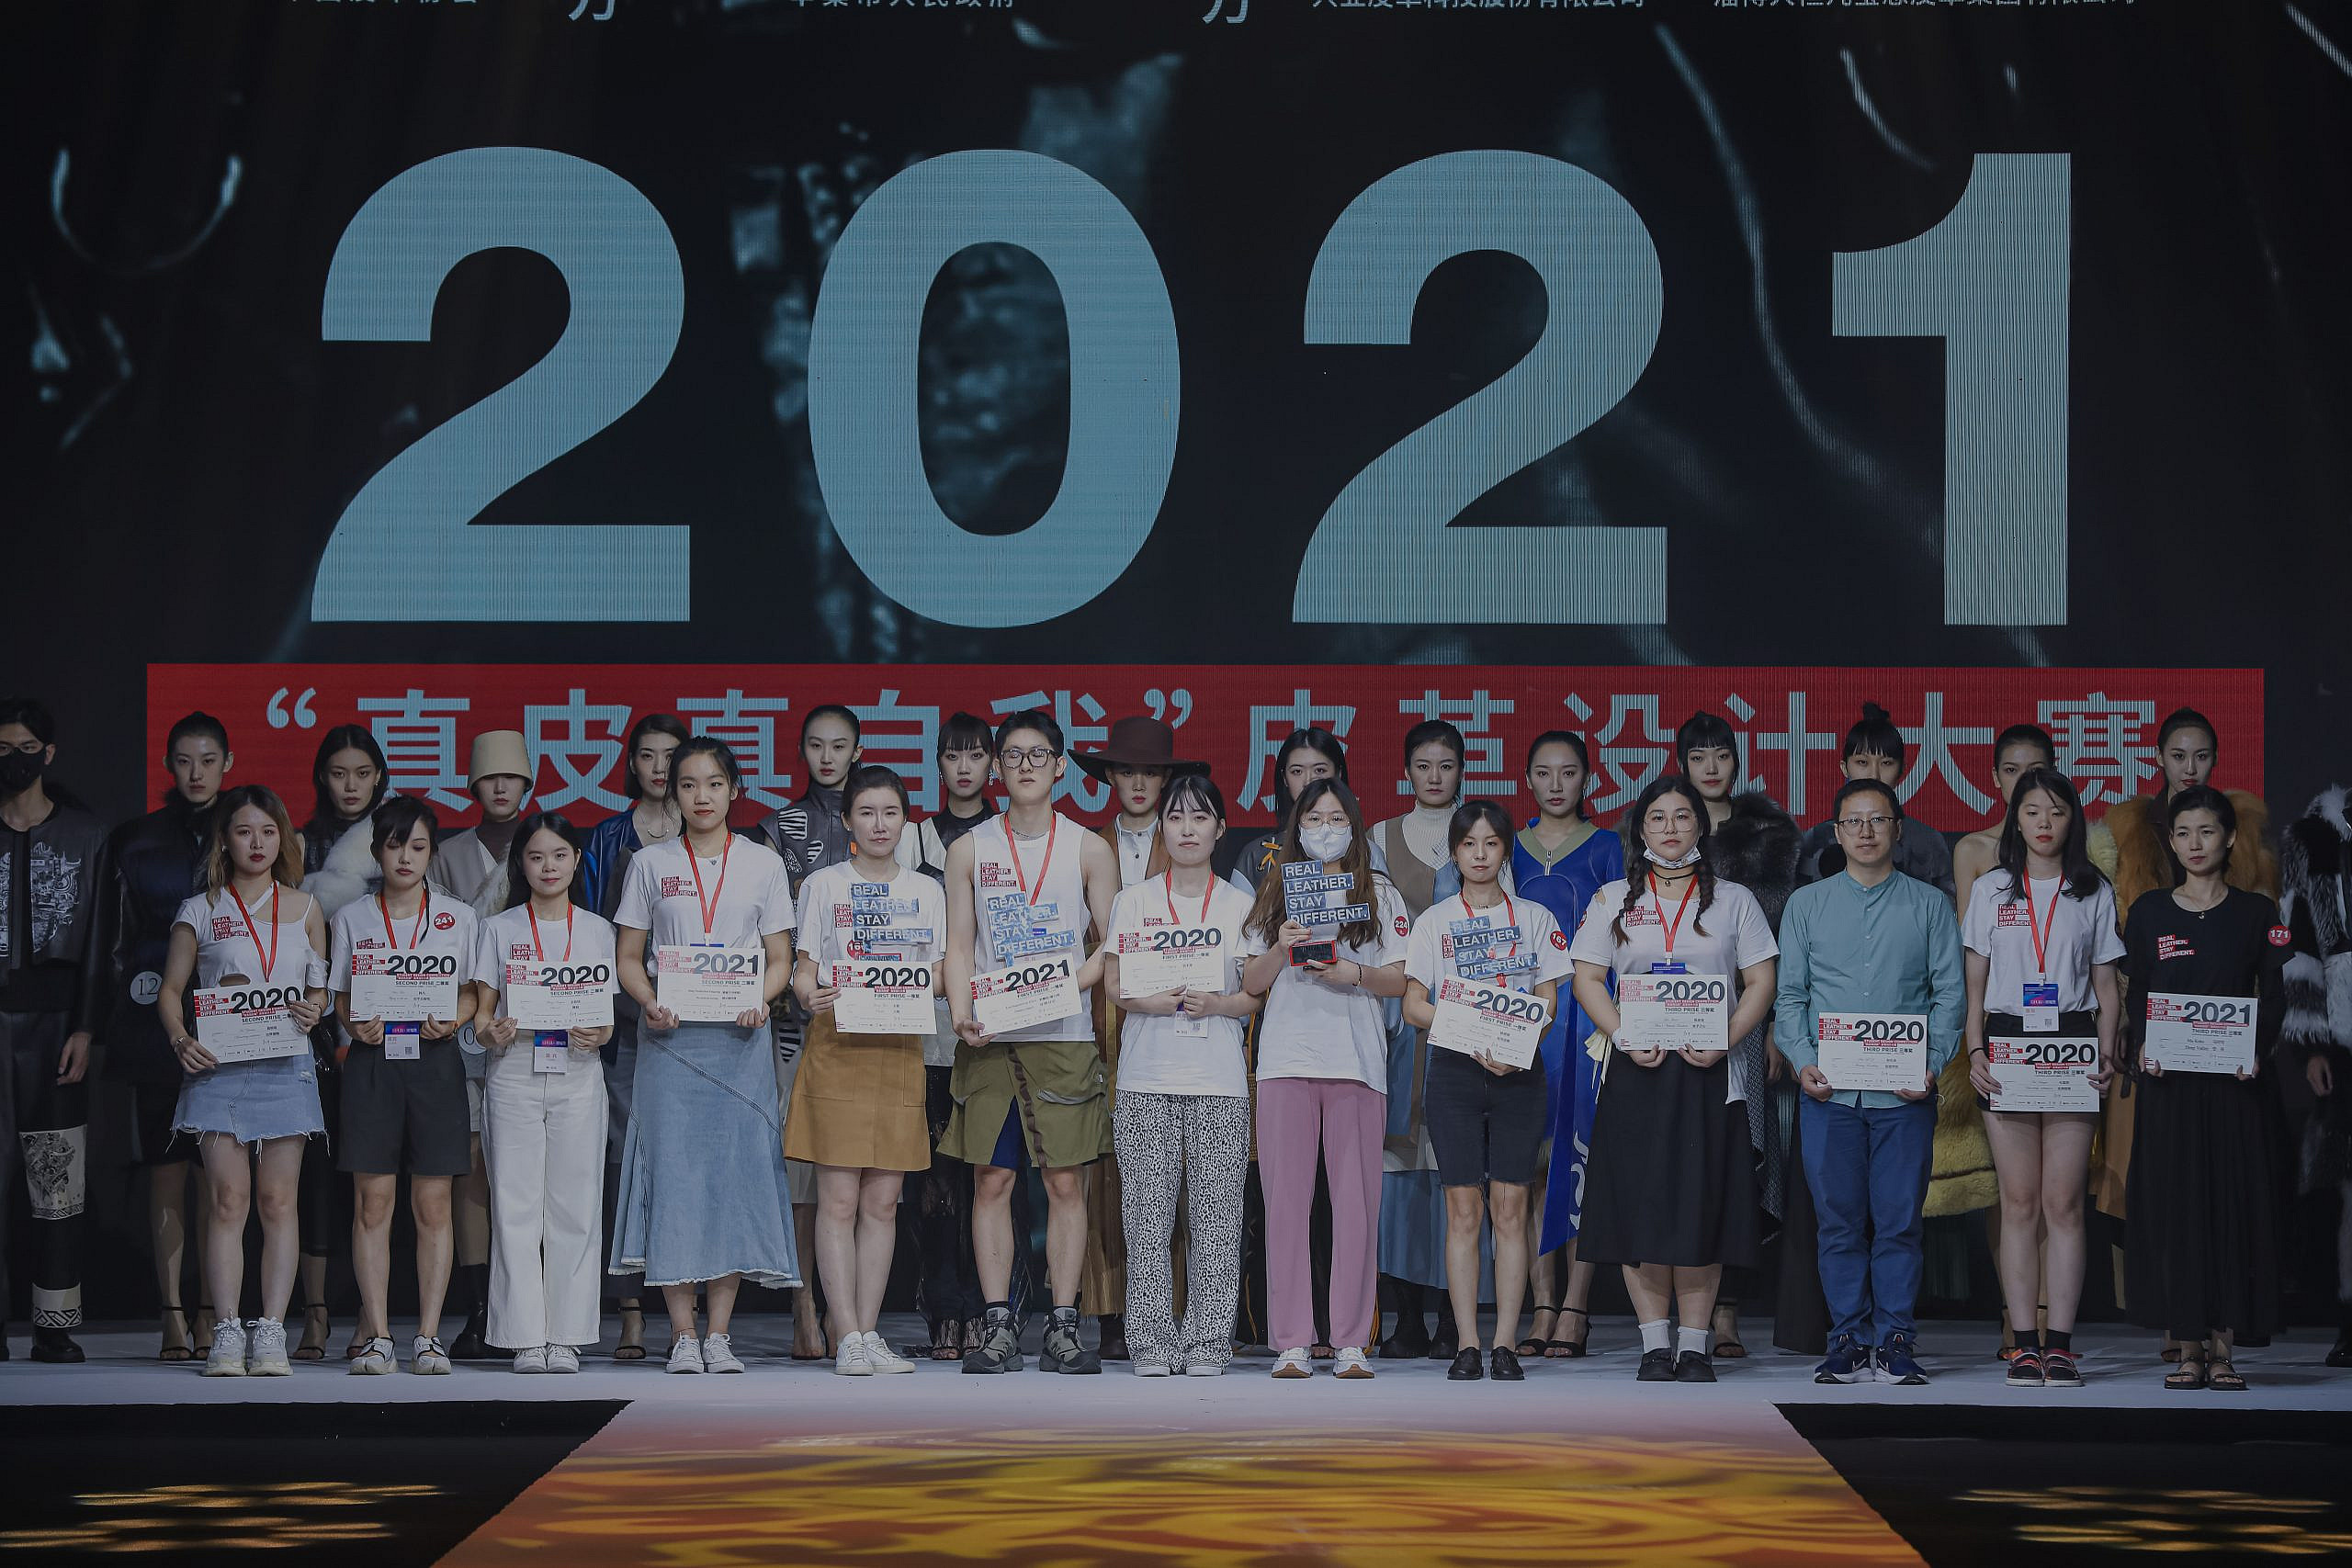 Real Leather. Stay Different., el “Concurso de diseño para estudiantes” finaliza con gran éxito en China